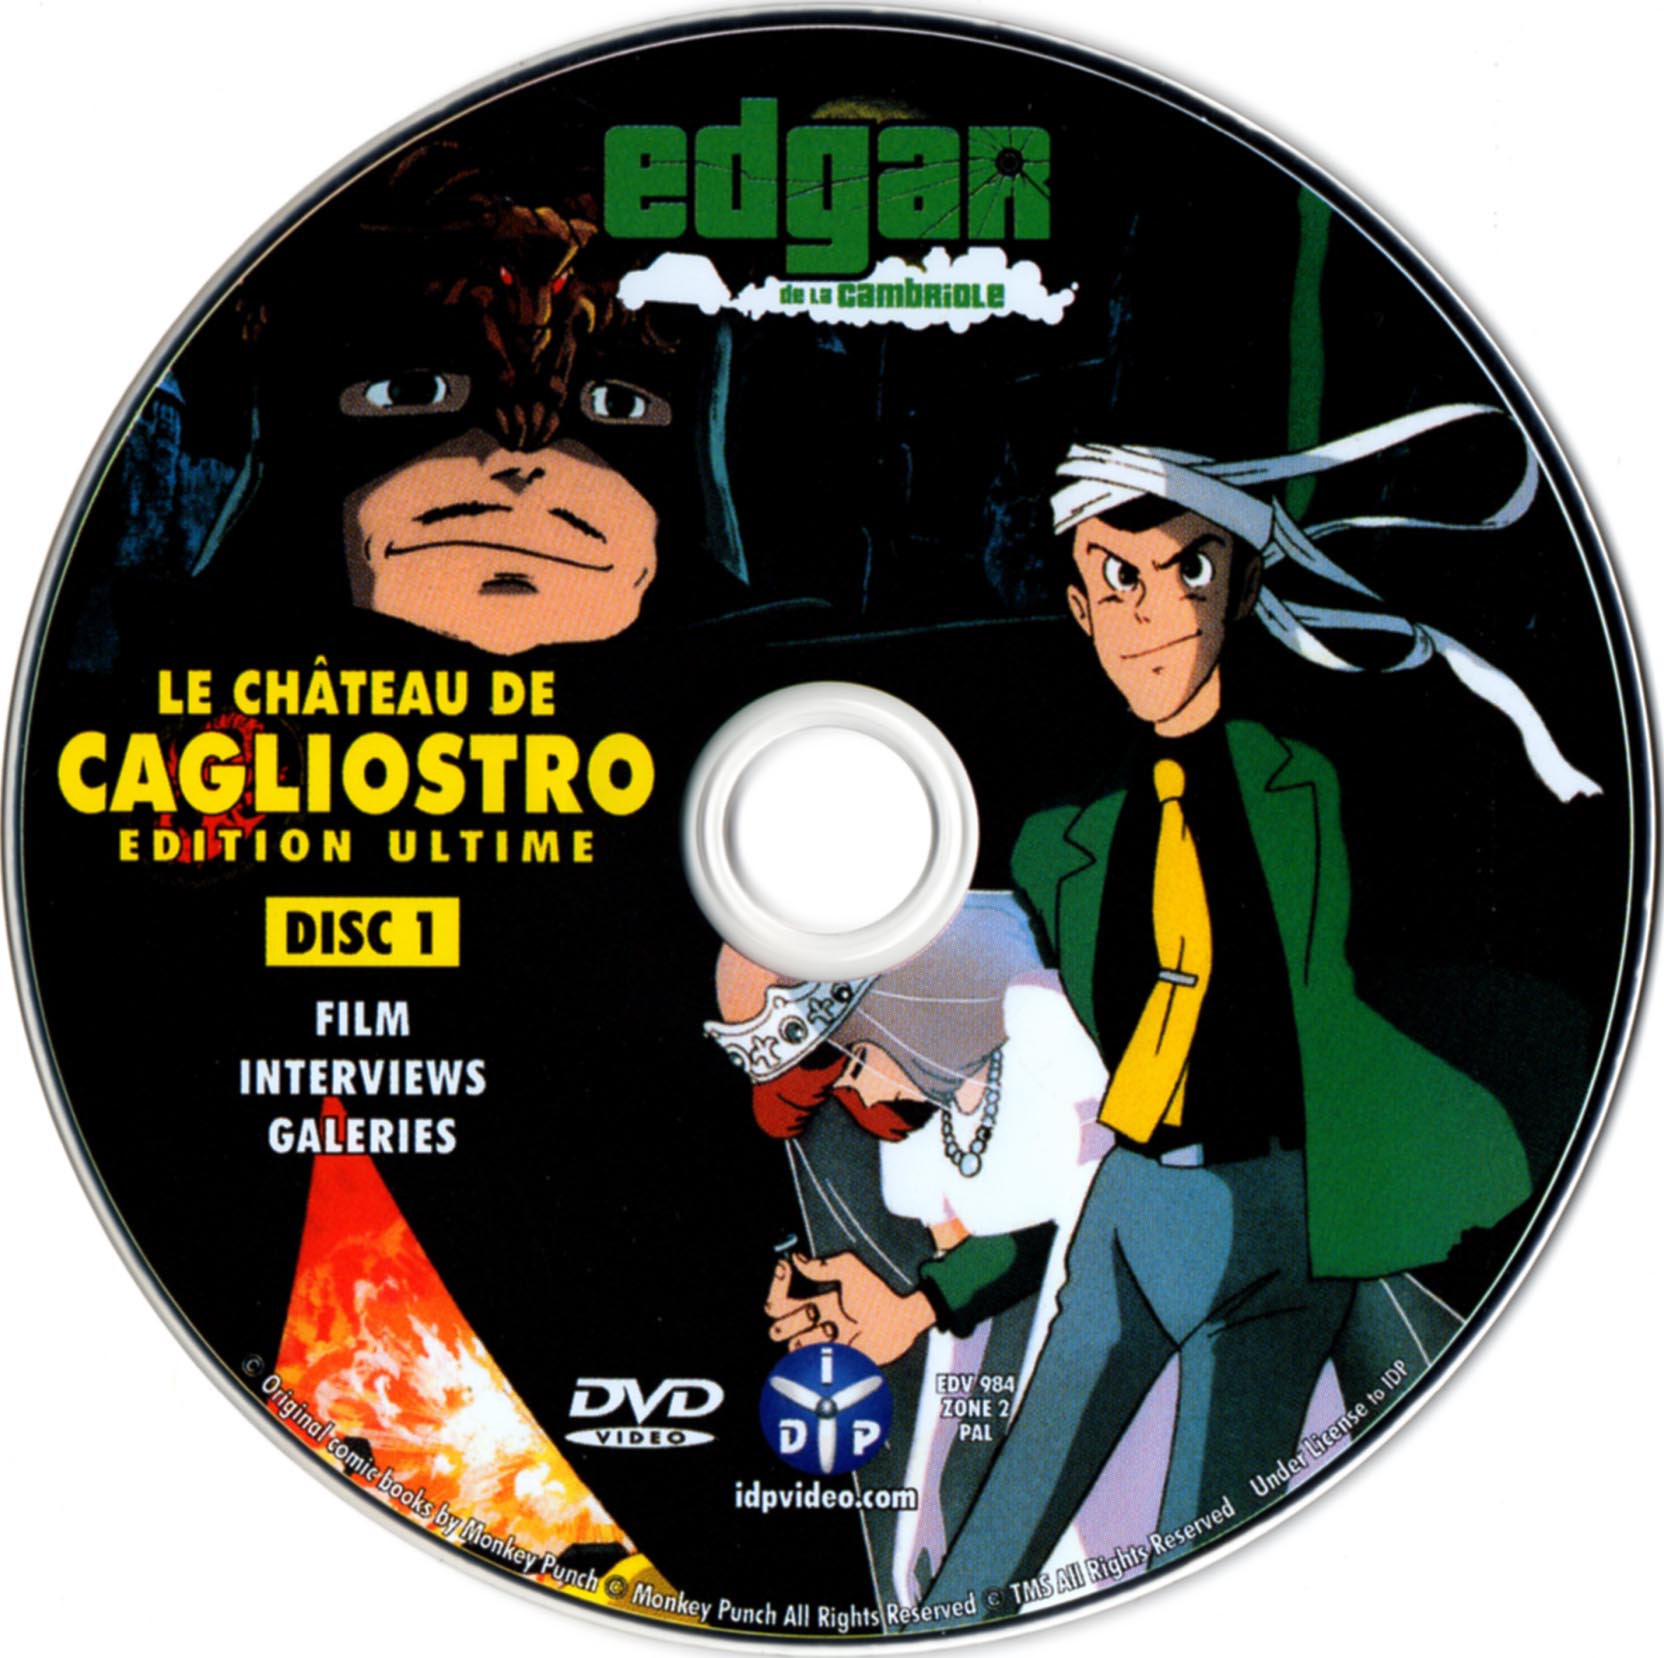 Le chateau de Cagliostro DISC 1